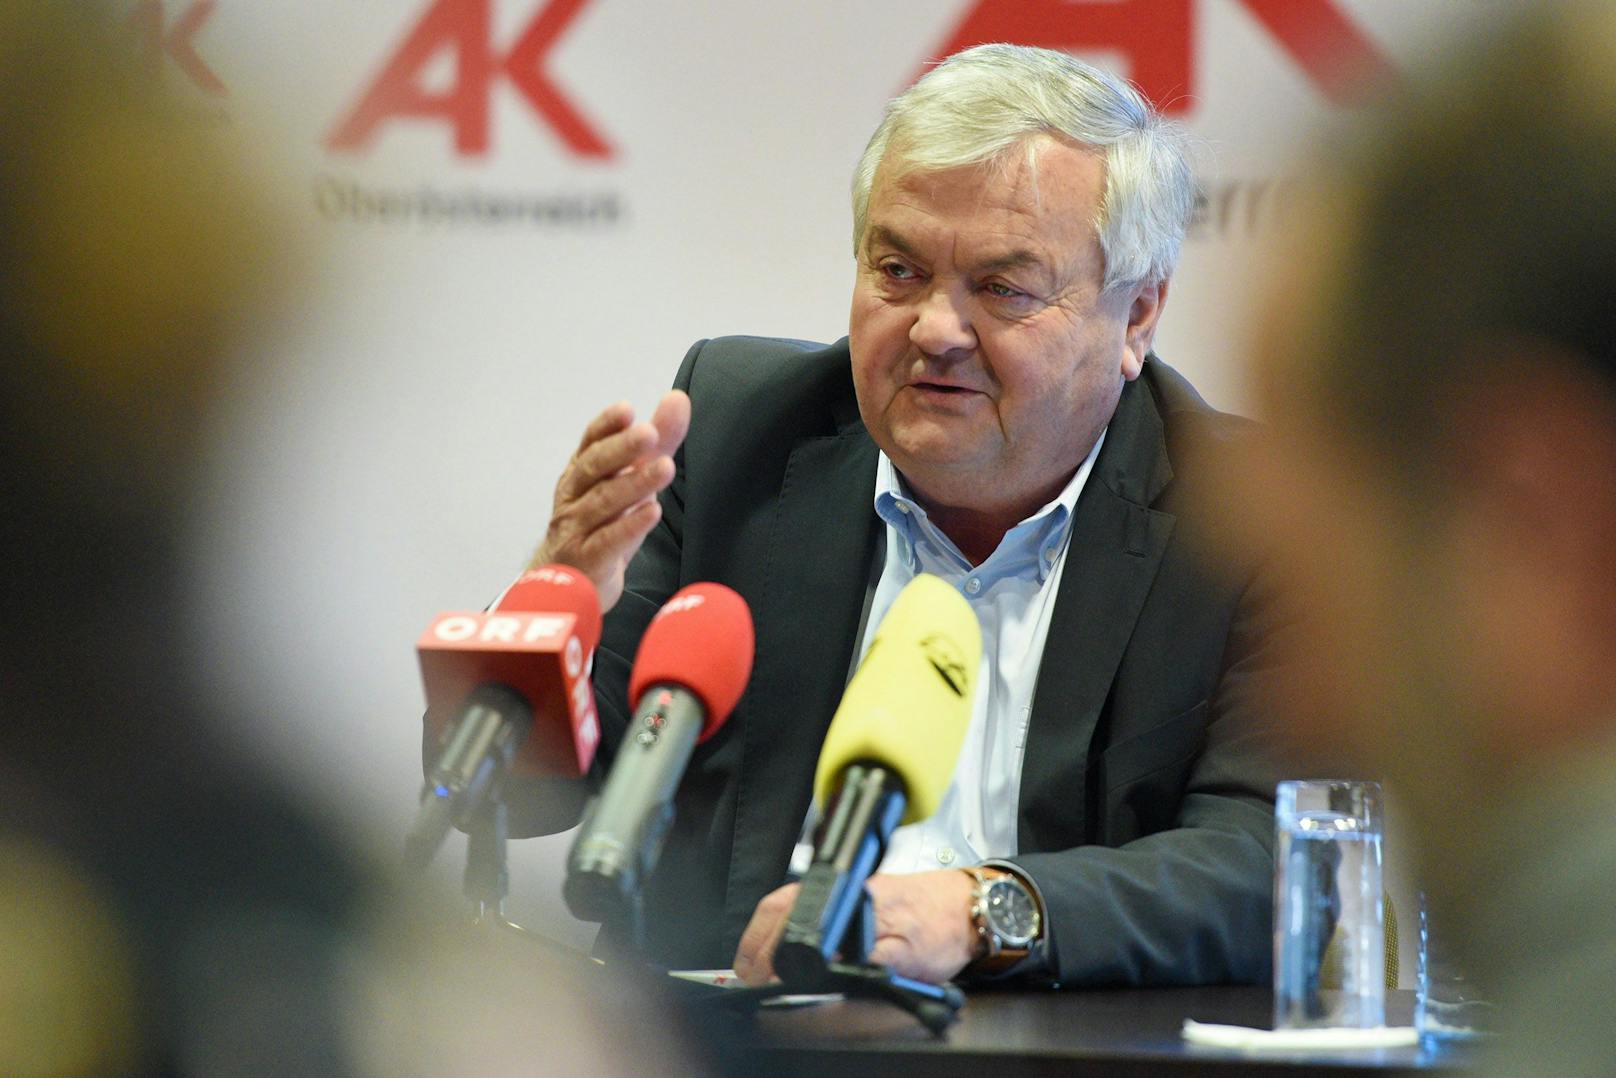 AK-Präsident Johann Kalliauer gab am Montag seinen Rückzug bekannt.